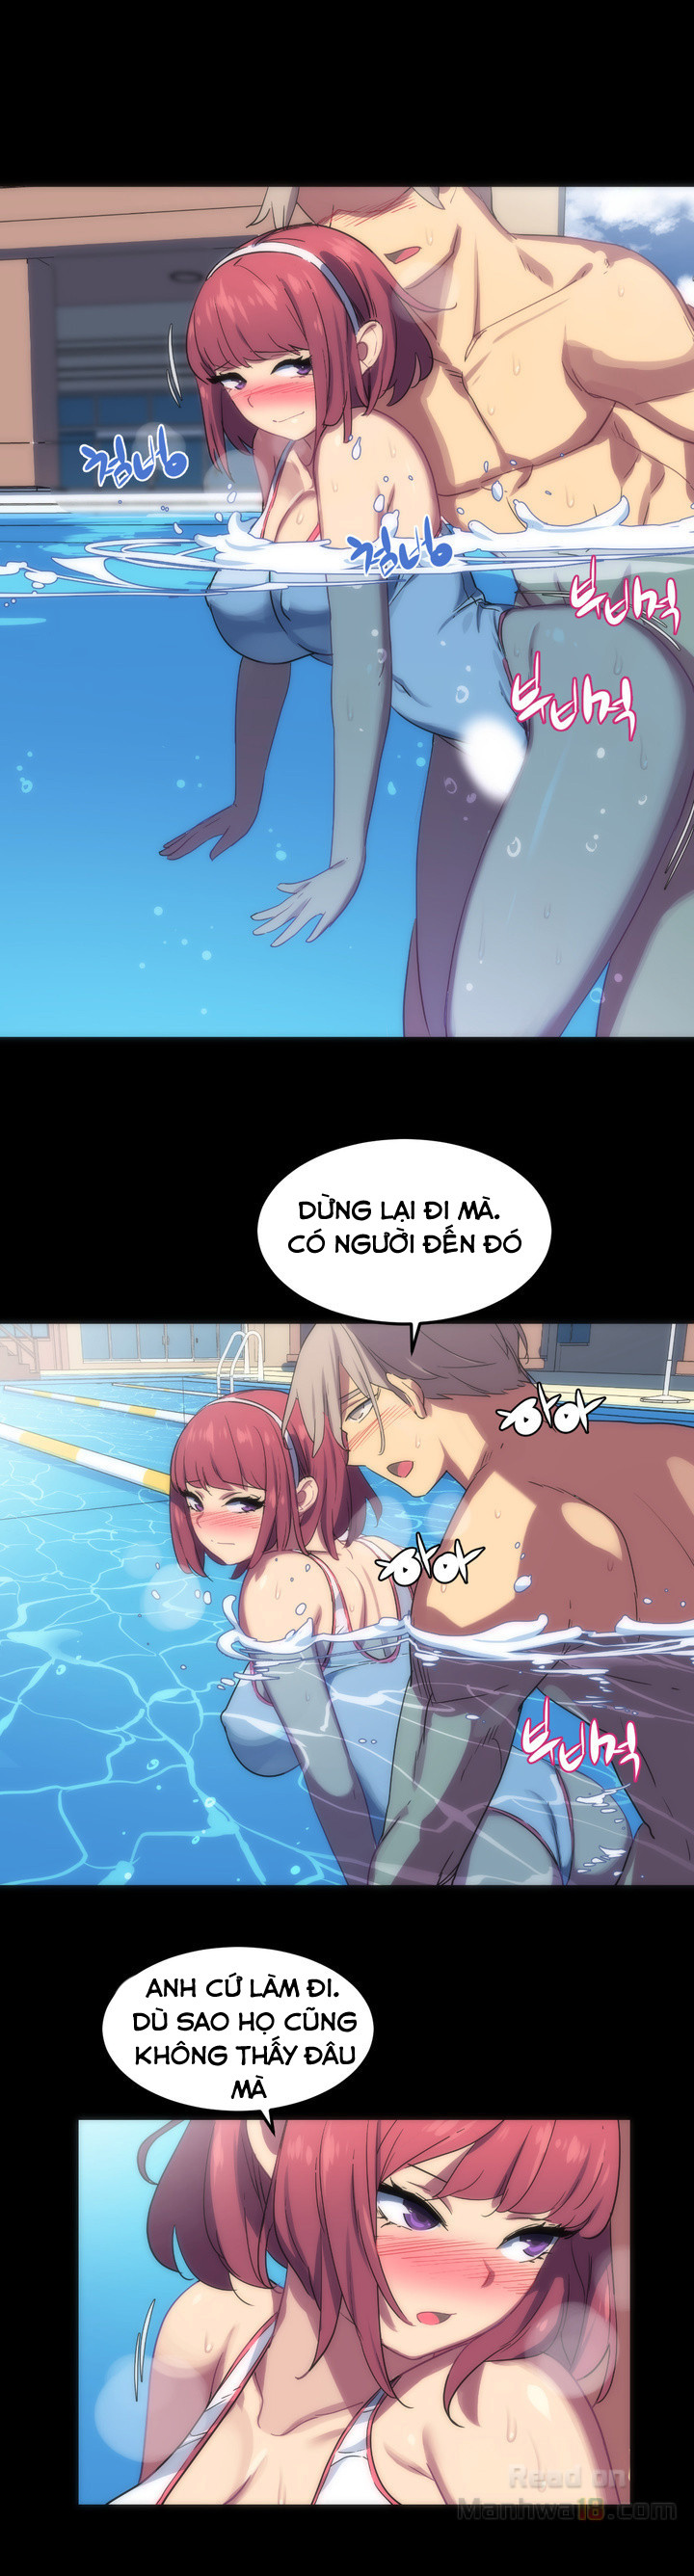 Chị Gái Sexy Ở Hồ Bơi Chapter 1 - Trang 35